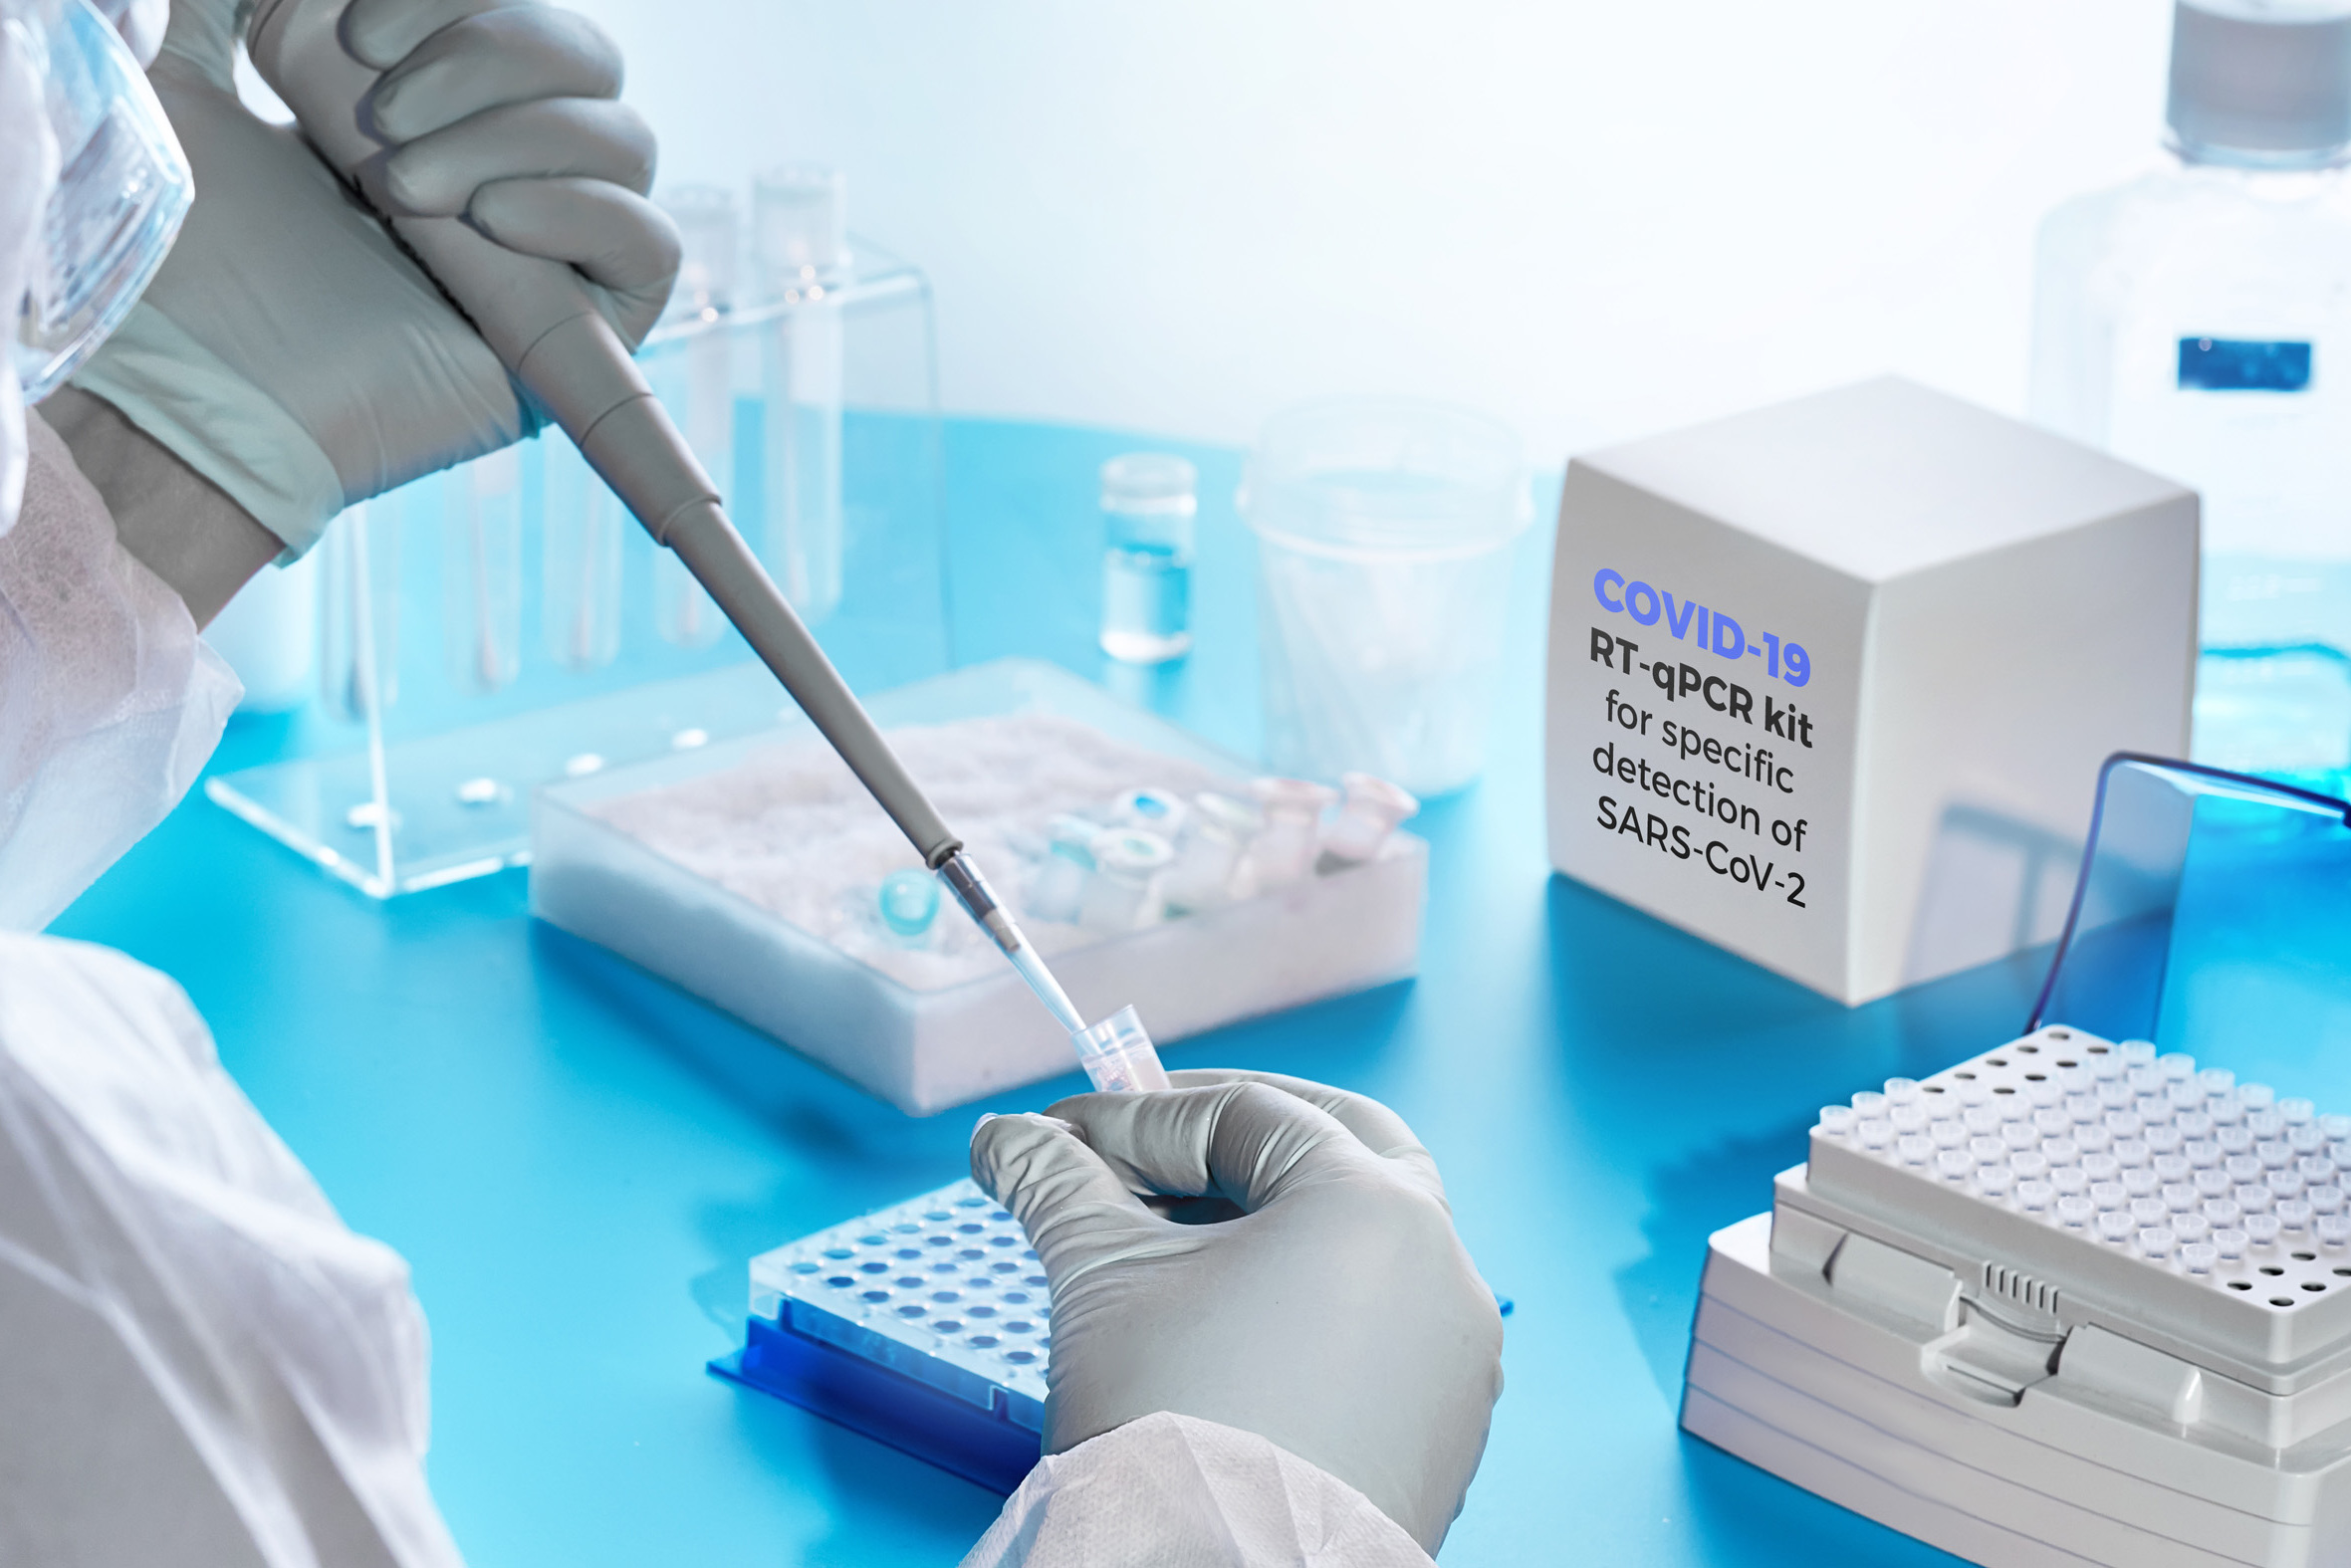 Նիդերլանդները 200 հազար եվրո կհատկացնի Հայաստանին բուժսարքավորումներ, այդ թվում՝ 3 հատ PCR թեսթավորման սարք ձեռք բերելու նպատակով